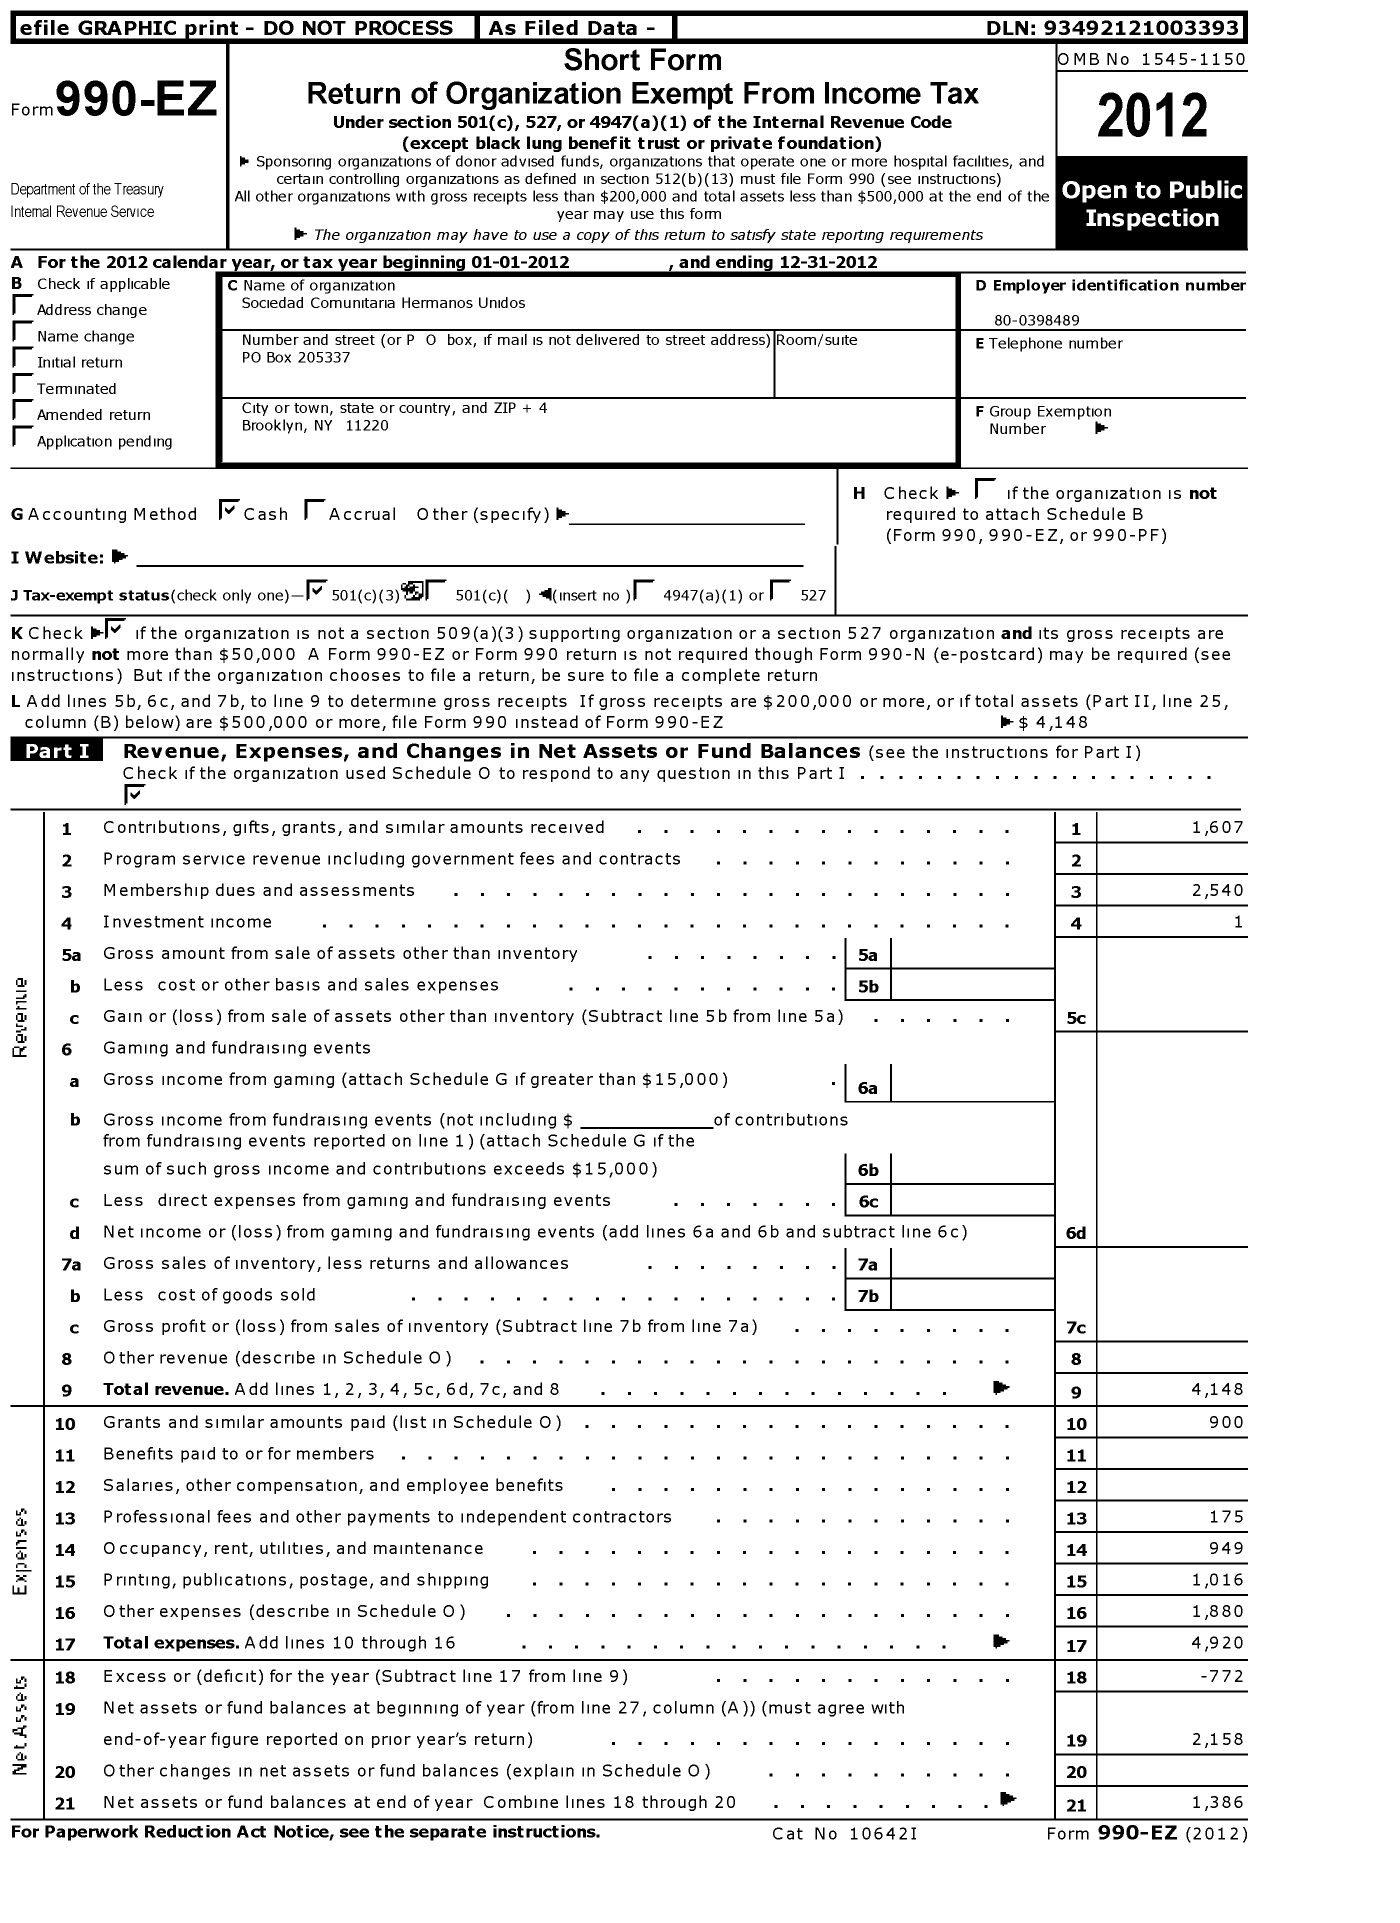 Image of first page of 2012 Form 990EZ for Sociedad Comunitaria Hermanos Unidos